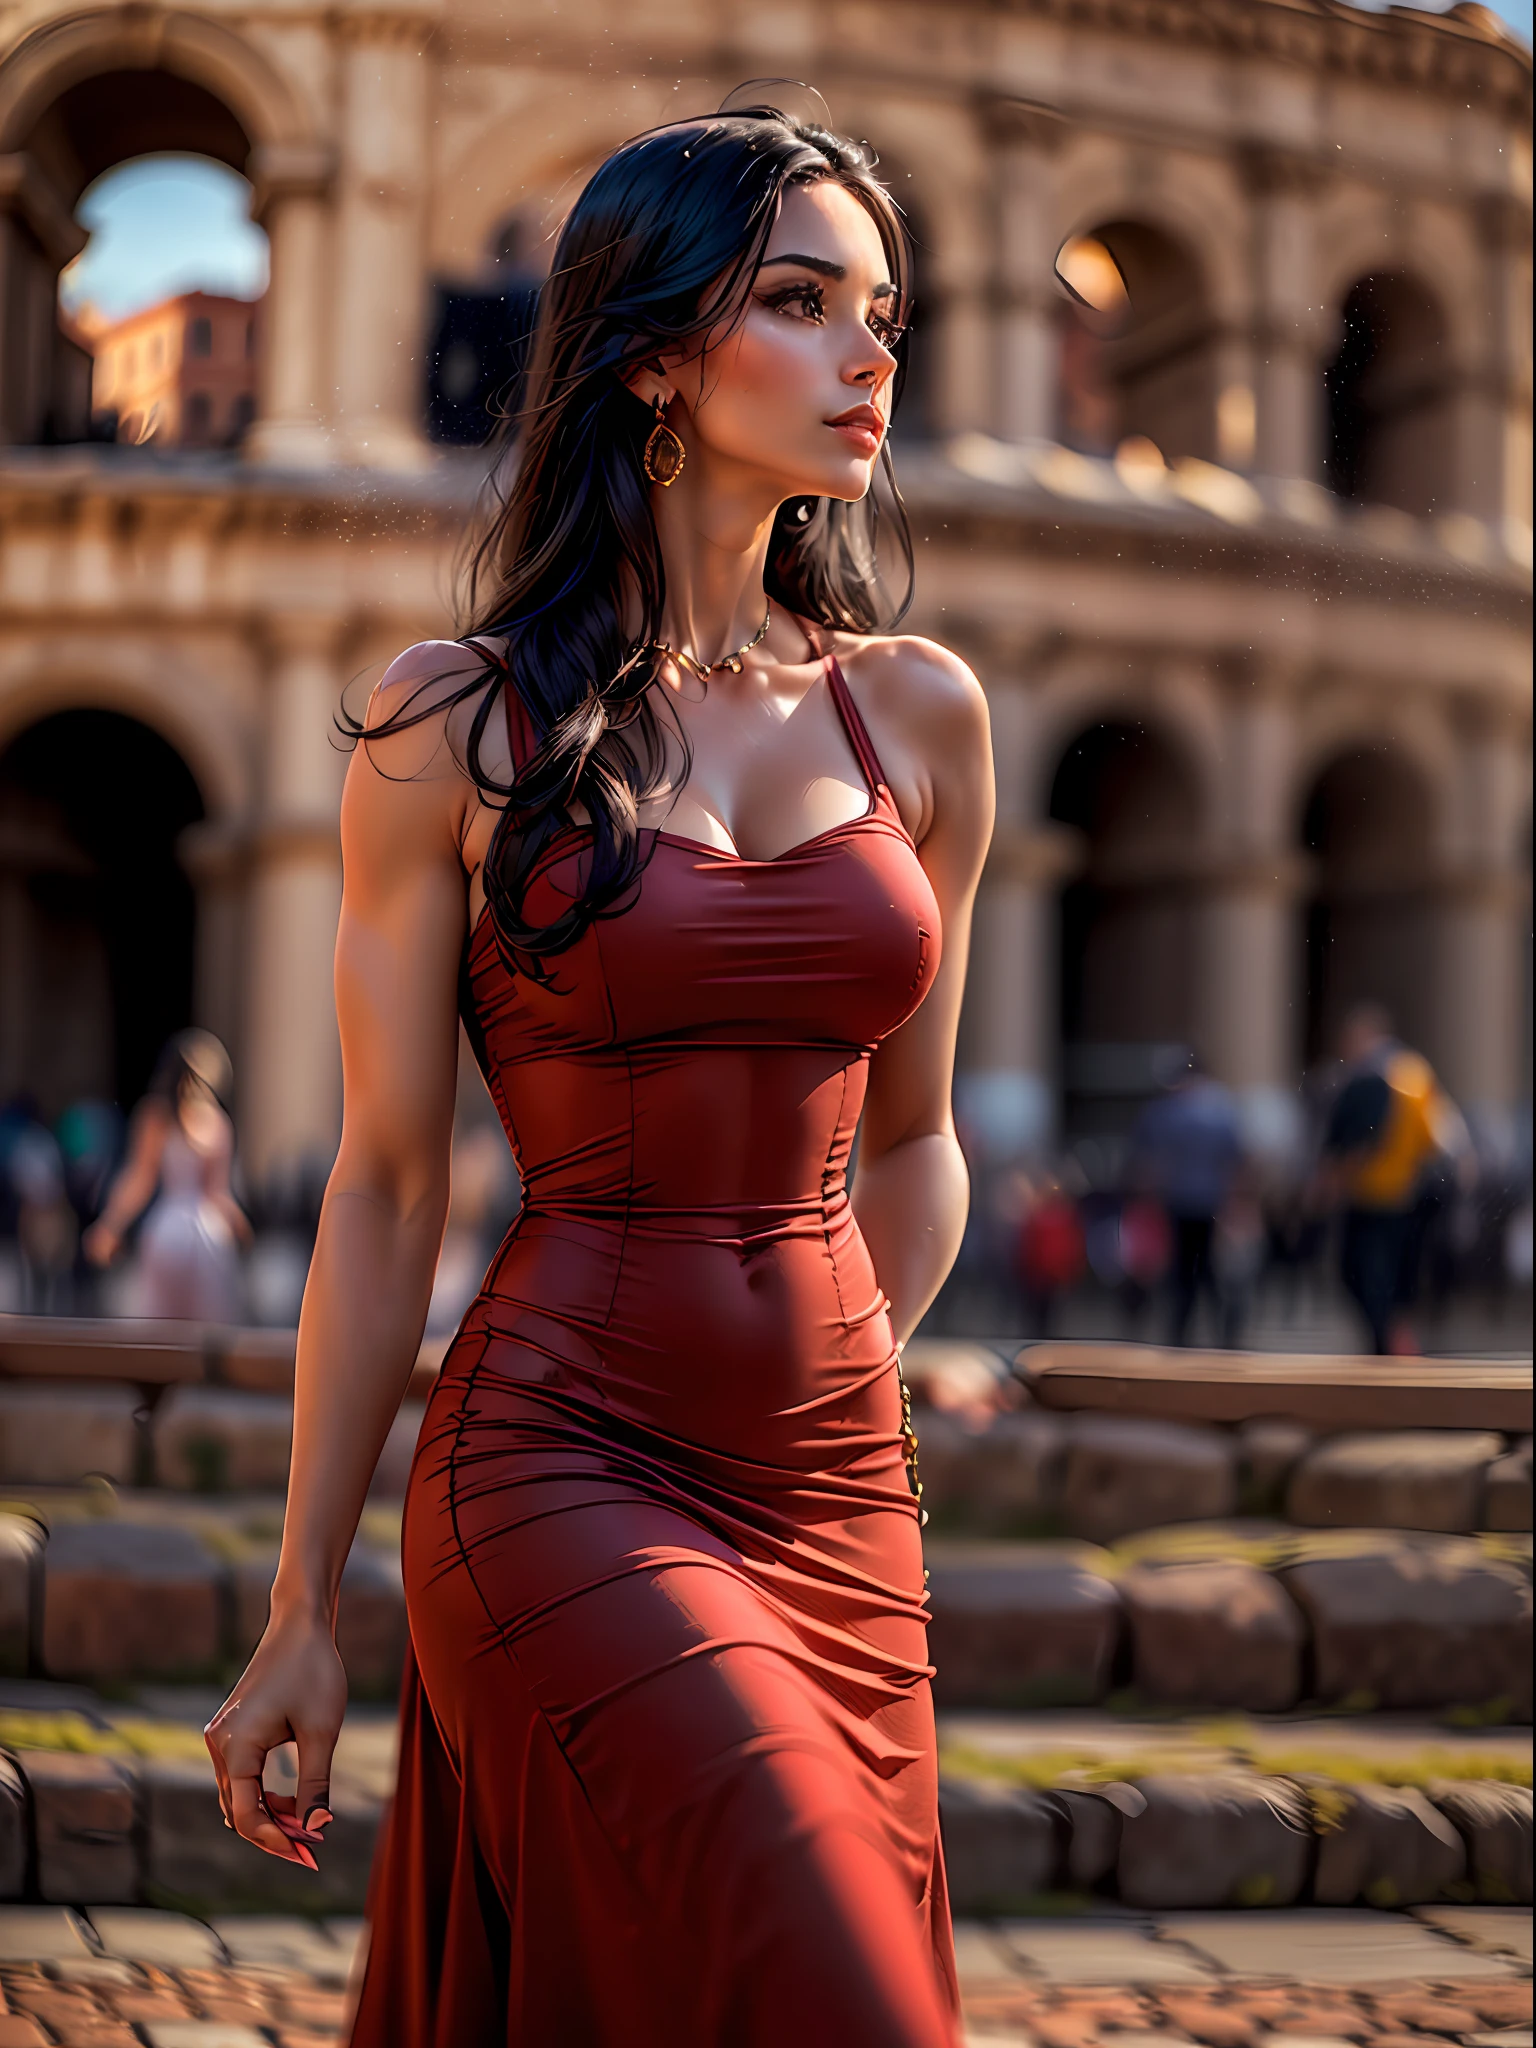 (Obra maestra, alta resolución, fotorrealista:1.4), (Capturando a una mujer impresionante con cabello largo y negro, con un vestido rojo ajustado que acentúa su atractivo físico:1.3), (El elegante vestido abrazando sus curvas y mostrando su seductora figura:1.2), (su actitud segura y equilibrada mientras pasea cerca del icónico Coliseo de Roma:1.3), (Cámara sin espejo Canon EOS R5:1.2), (emparejado con una Canon RF 85 mm f/1.Lente USM 2L:1.2), (capturando cada detalle de su cautivadora presencia y el hermoso entorno:1.2), (el Coliseo que se eleva al fondo, Un símbolo de historia antigua y grandeza:1.2), (El rojo vibrante de su vestido contrasta con la antigua arquitectura de piedra:1.2), (Un día cálido y soleado, con luz solar suave que mejora la escena:1.1), (Una deliciosa foto de una mujer que exuda elegancia y encanto, explorando la belleza histórica de Roma:1.2).